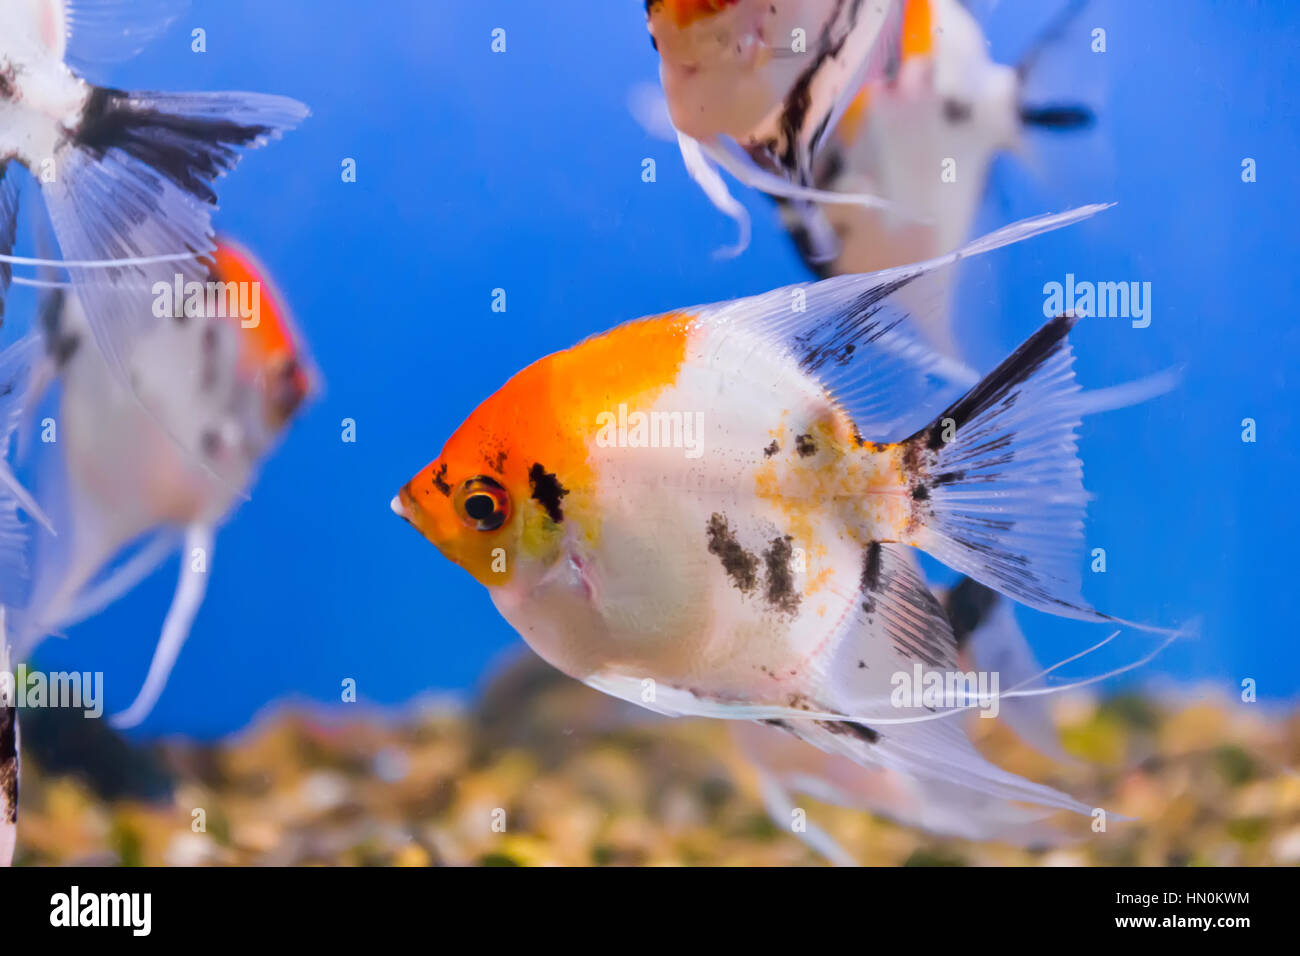 Photo of aquarium fish in blue water Stock Photo